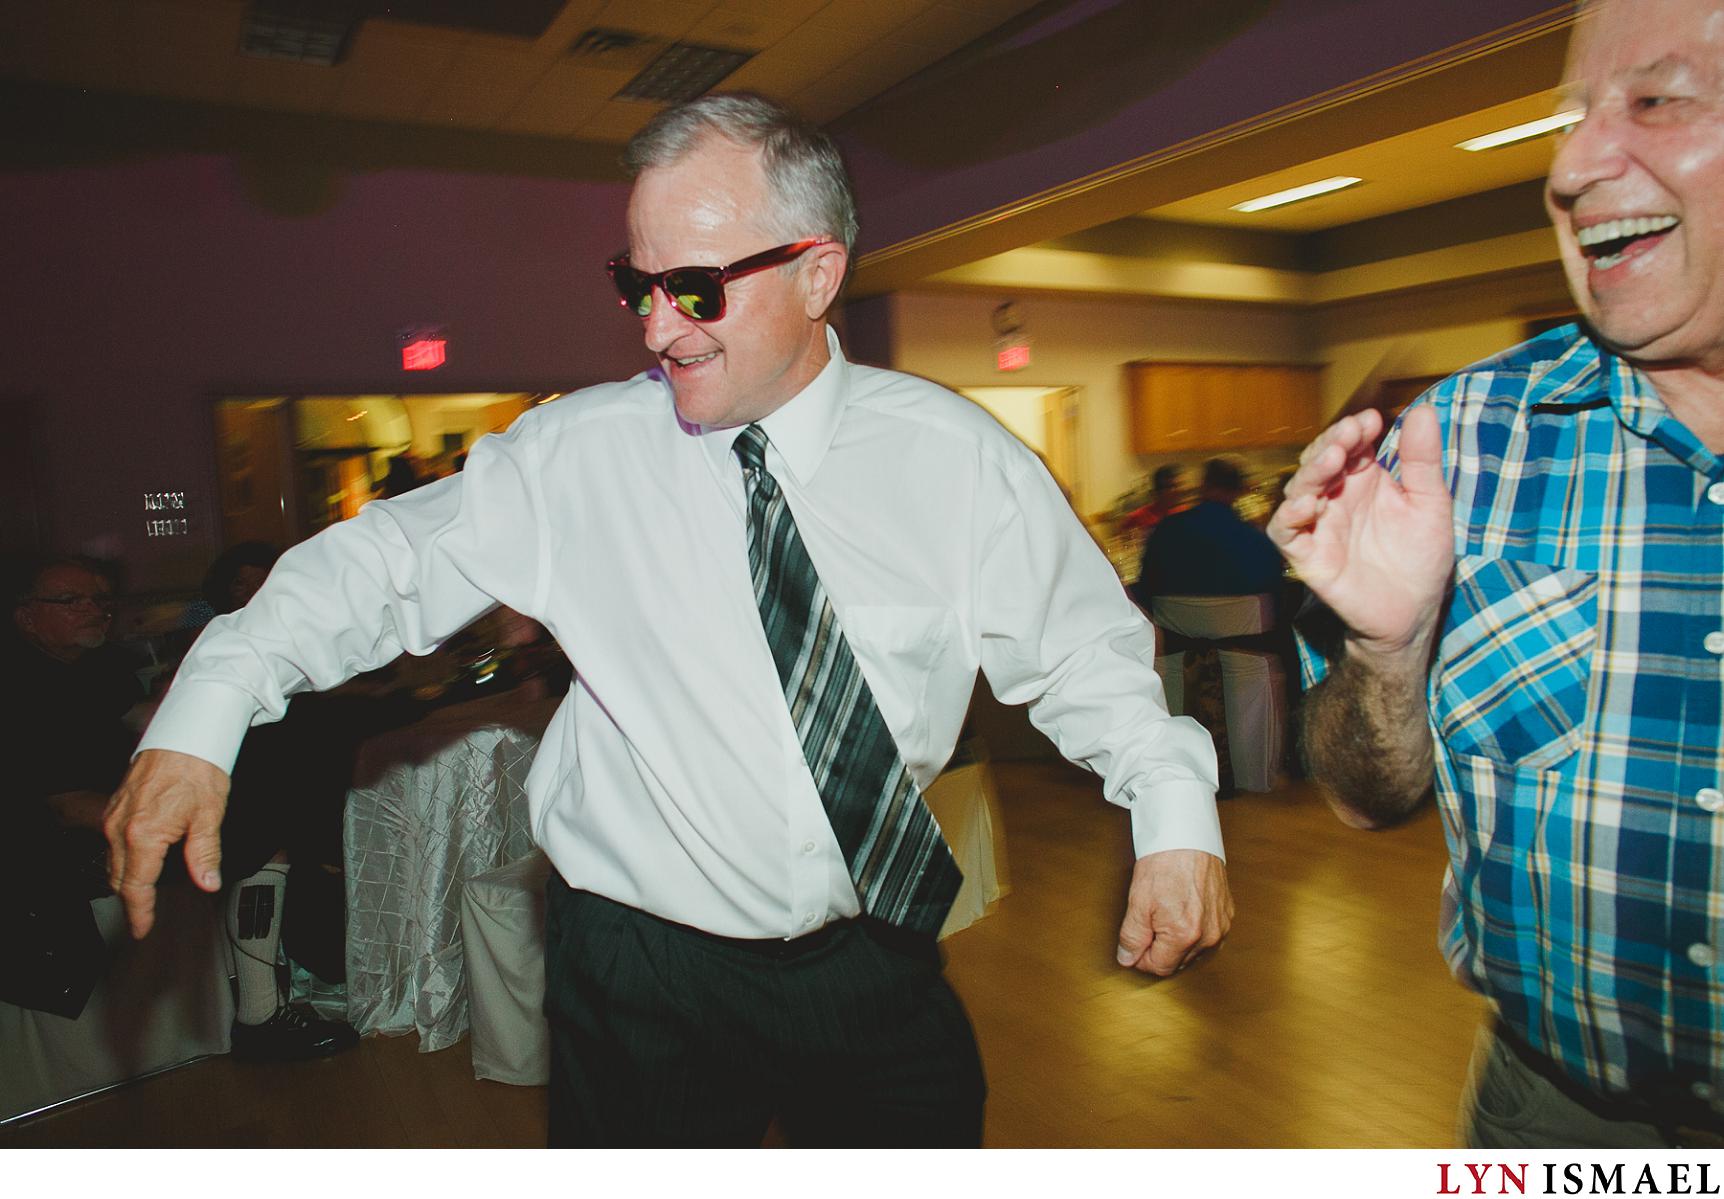 guests dancing at a wedding reception in Alma, Ontario